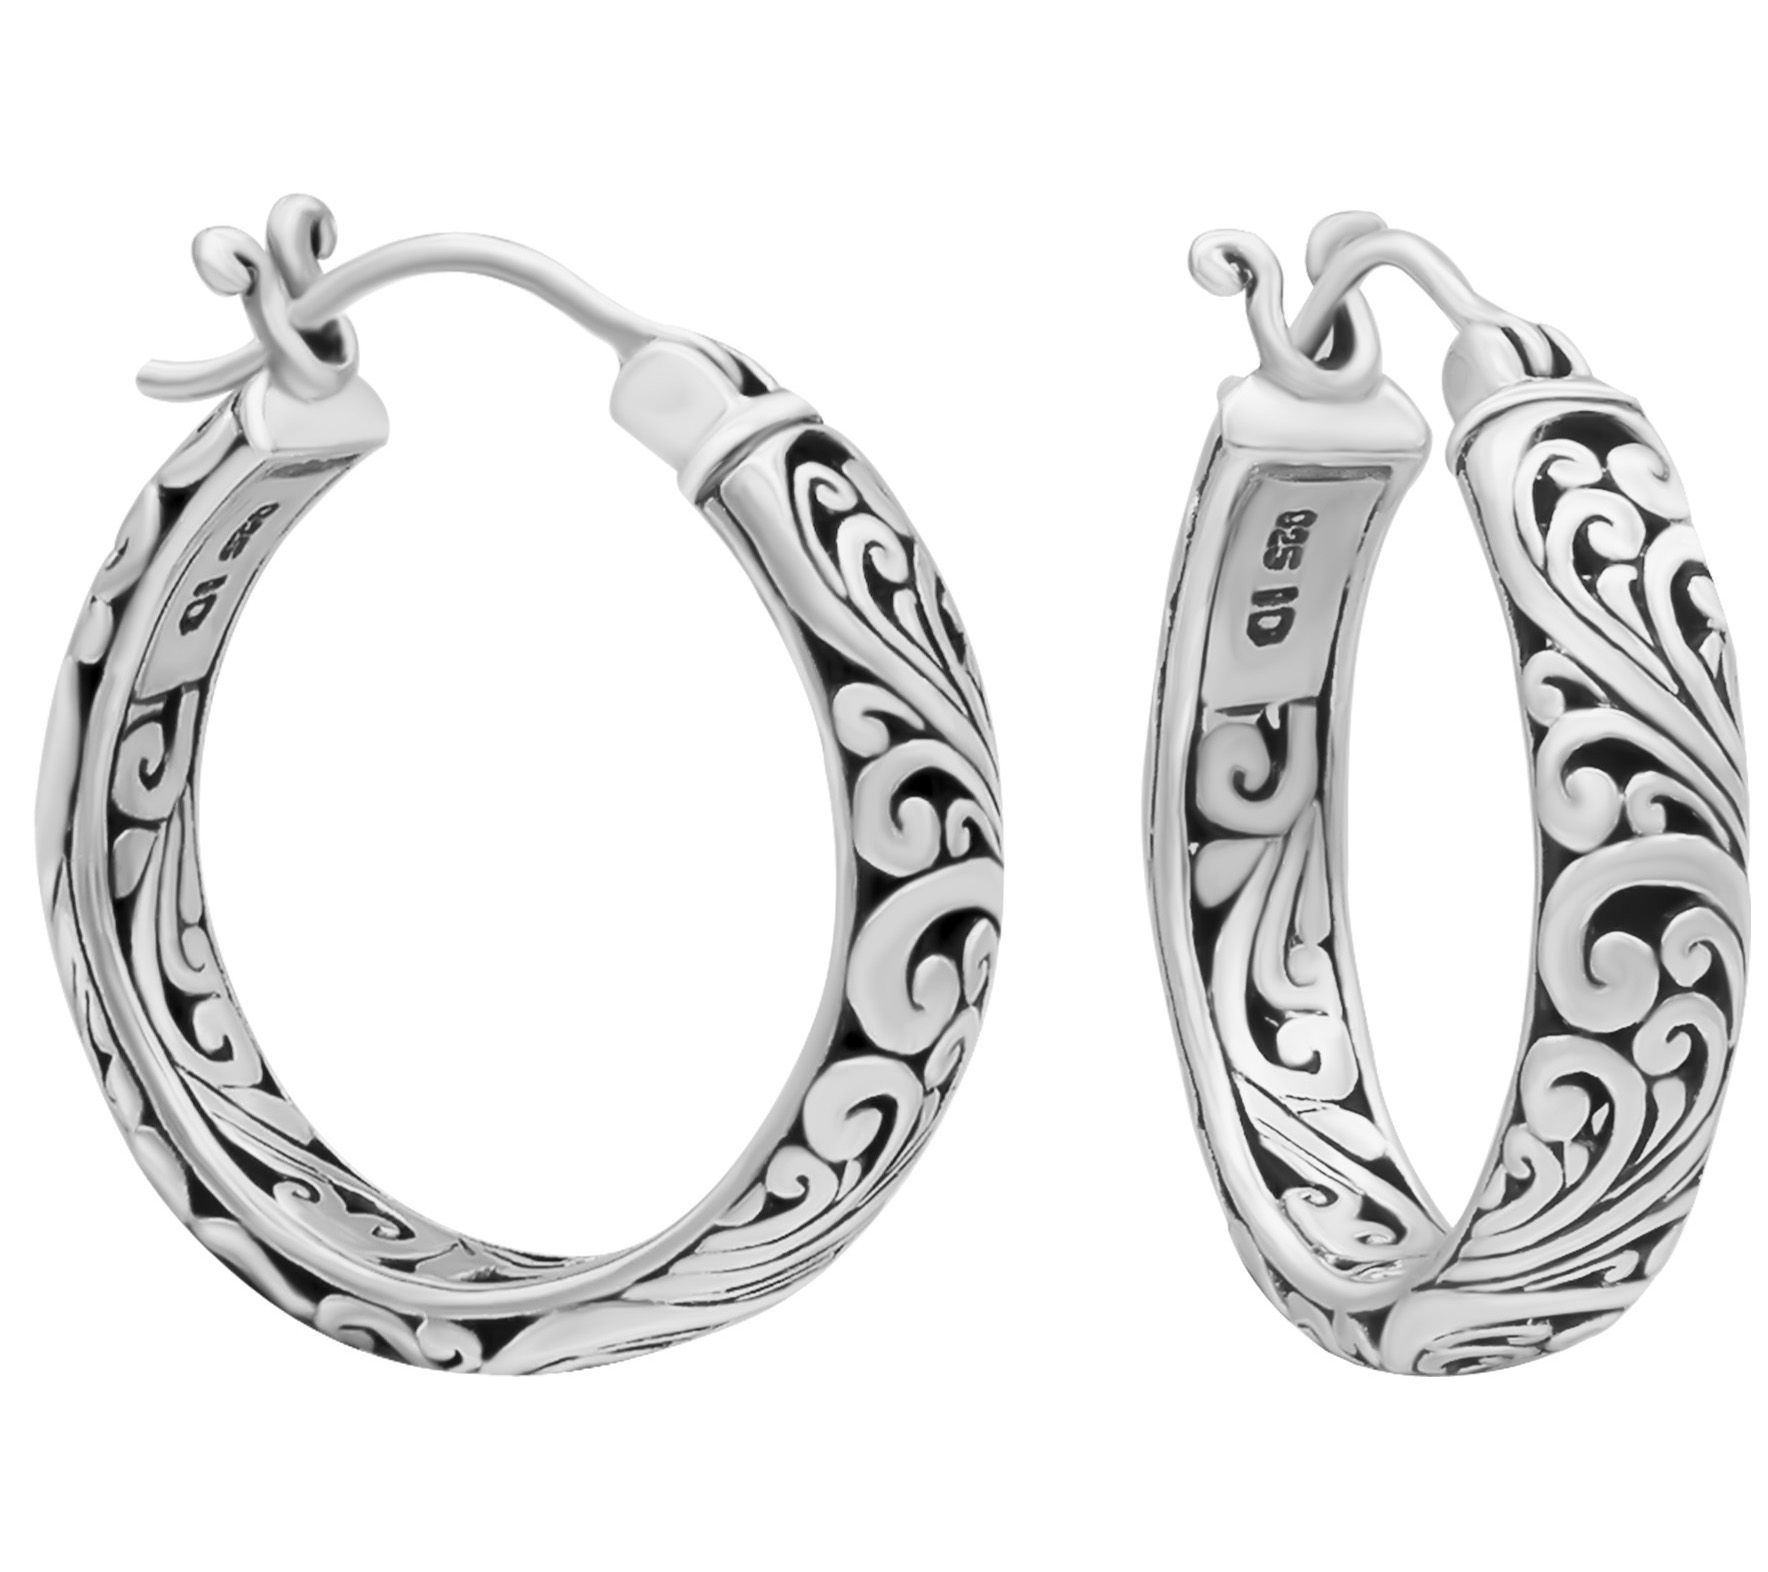 DEVATA Bali Filigree Sterling Silver 925 Byzantine Hoop Earrings DHN3322